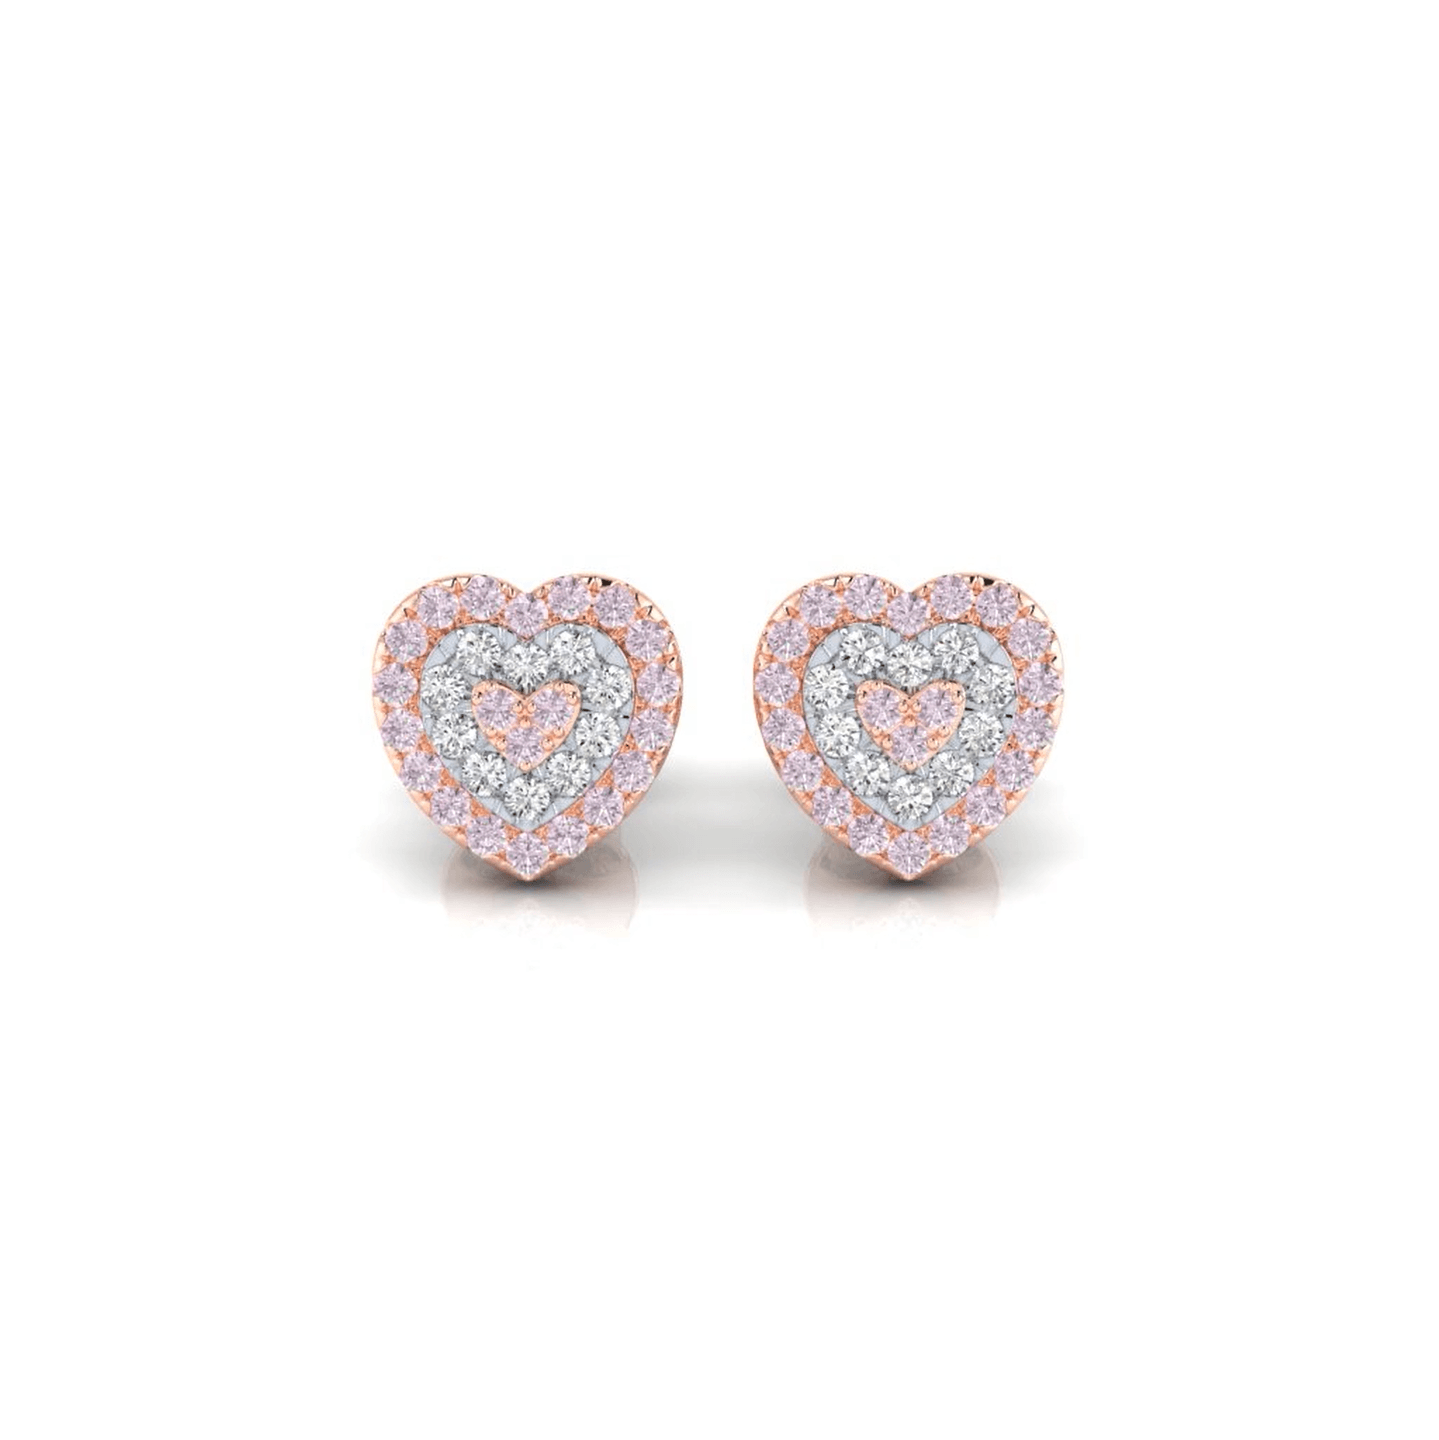 Eminence Pinks Diamond Heart Earrings - Rosendorff Diamond Jewellers